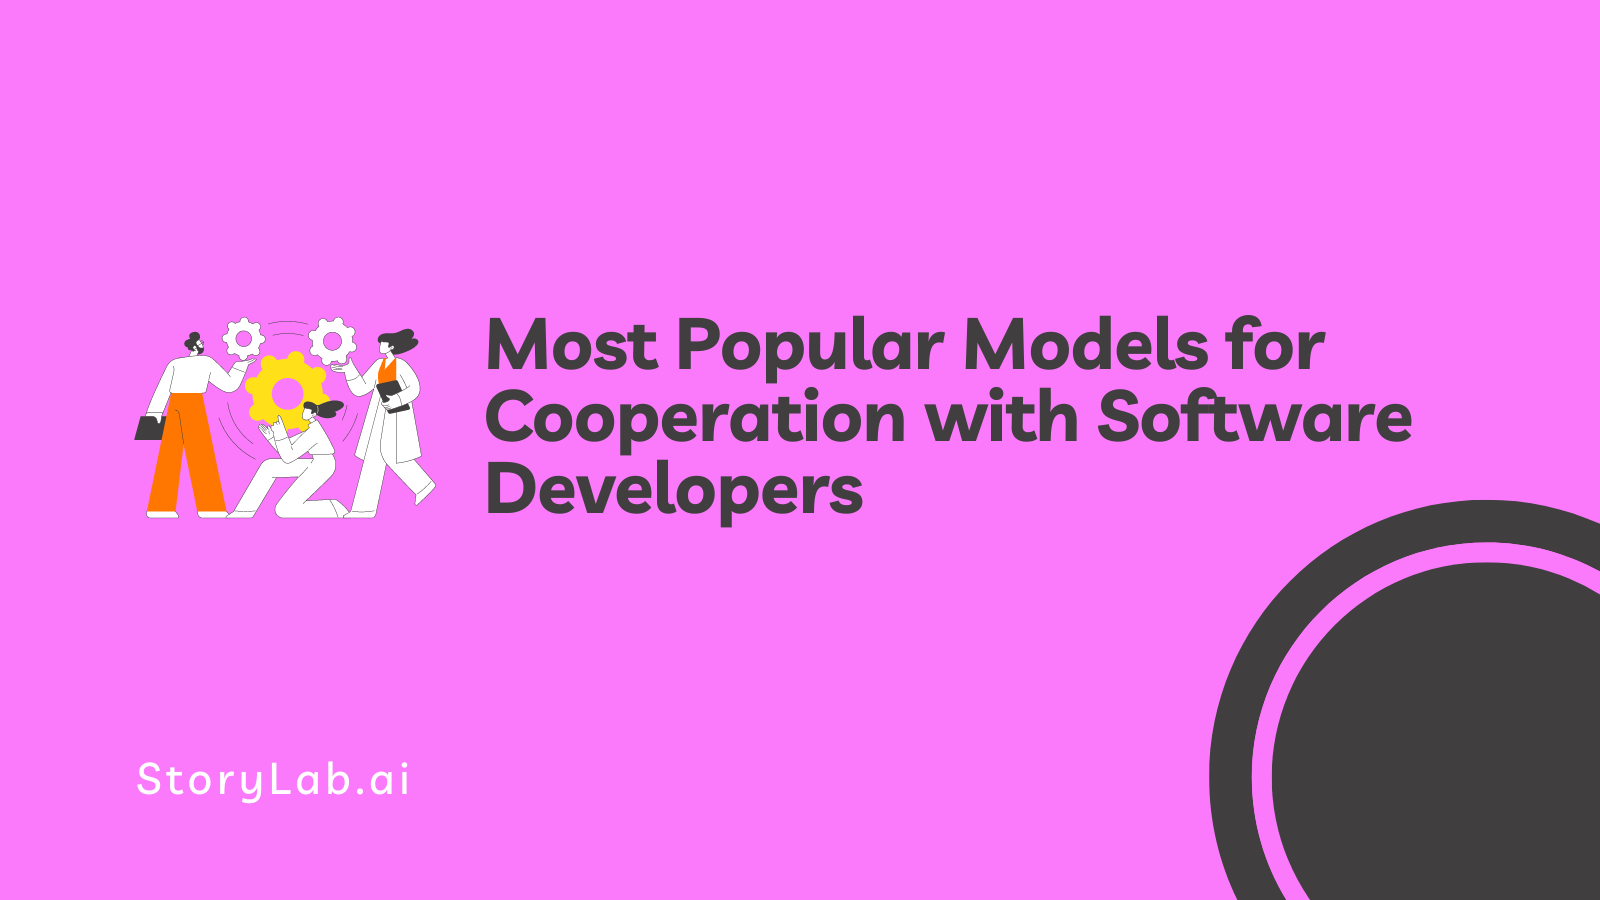 Modèles de coopération les plus populaires avec les développeurs de logiciels